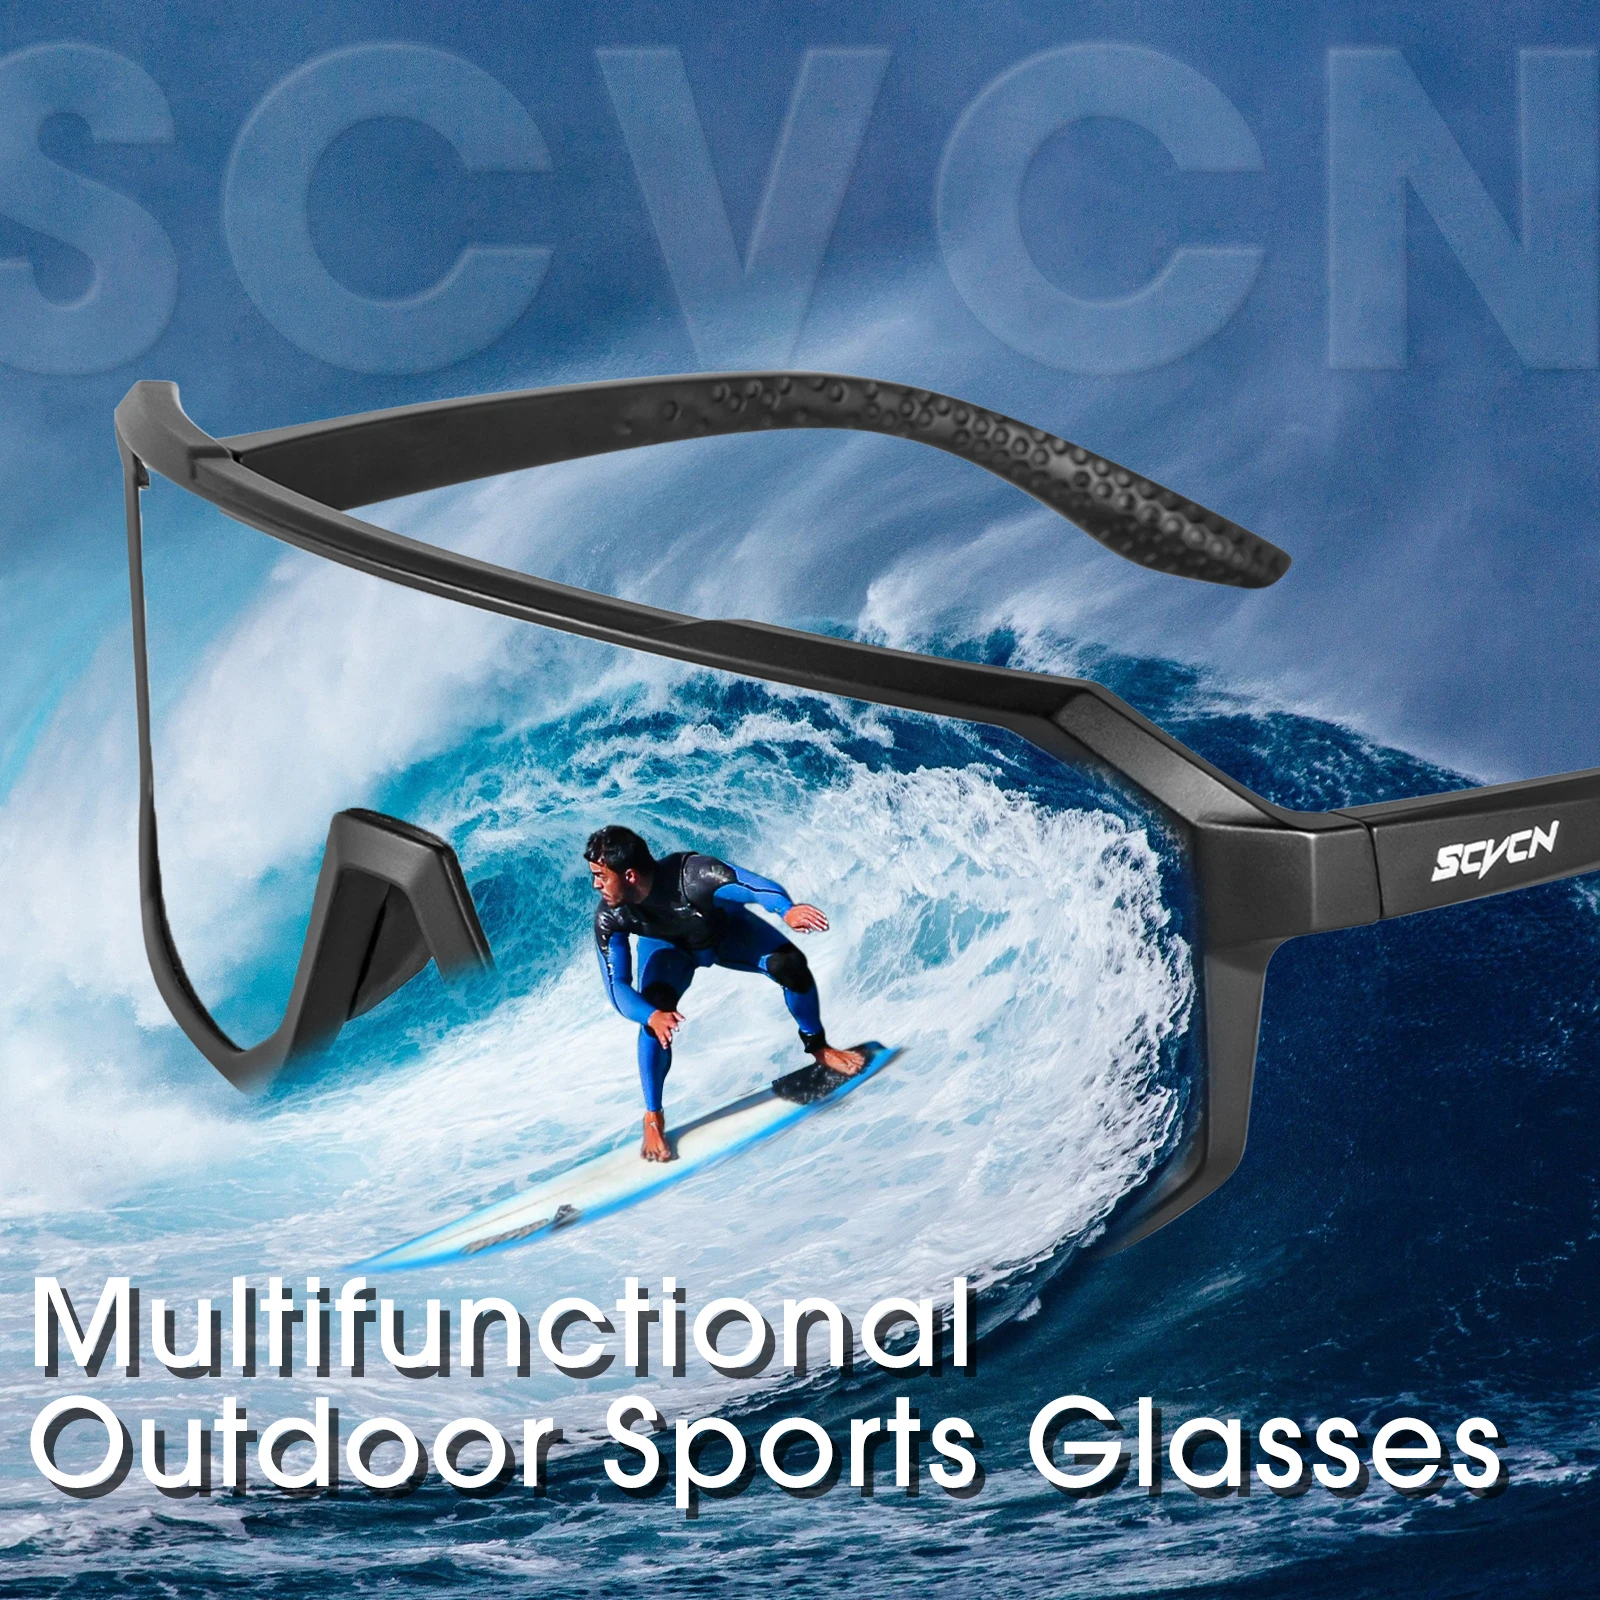 SCVCN-gafas de sol fotocromáticas para ciclismo para hombre y mujer, lentes  deportivas para correr, para bicicleta de montaña y carretera, UV400